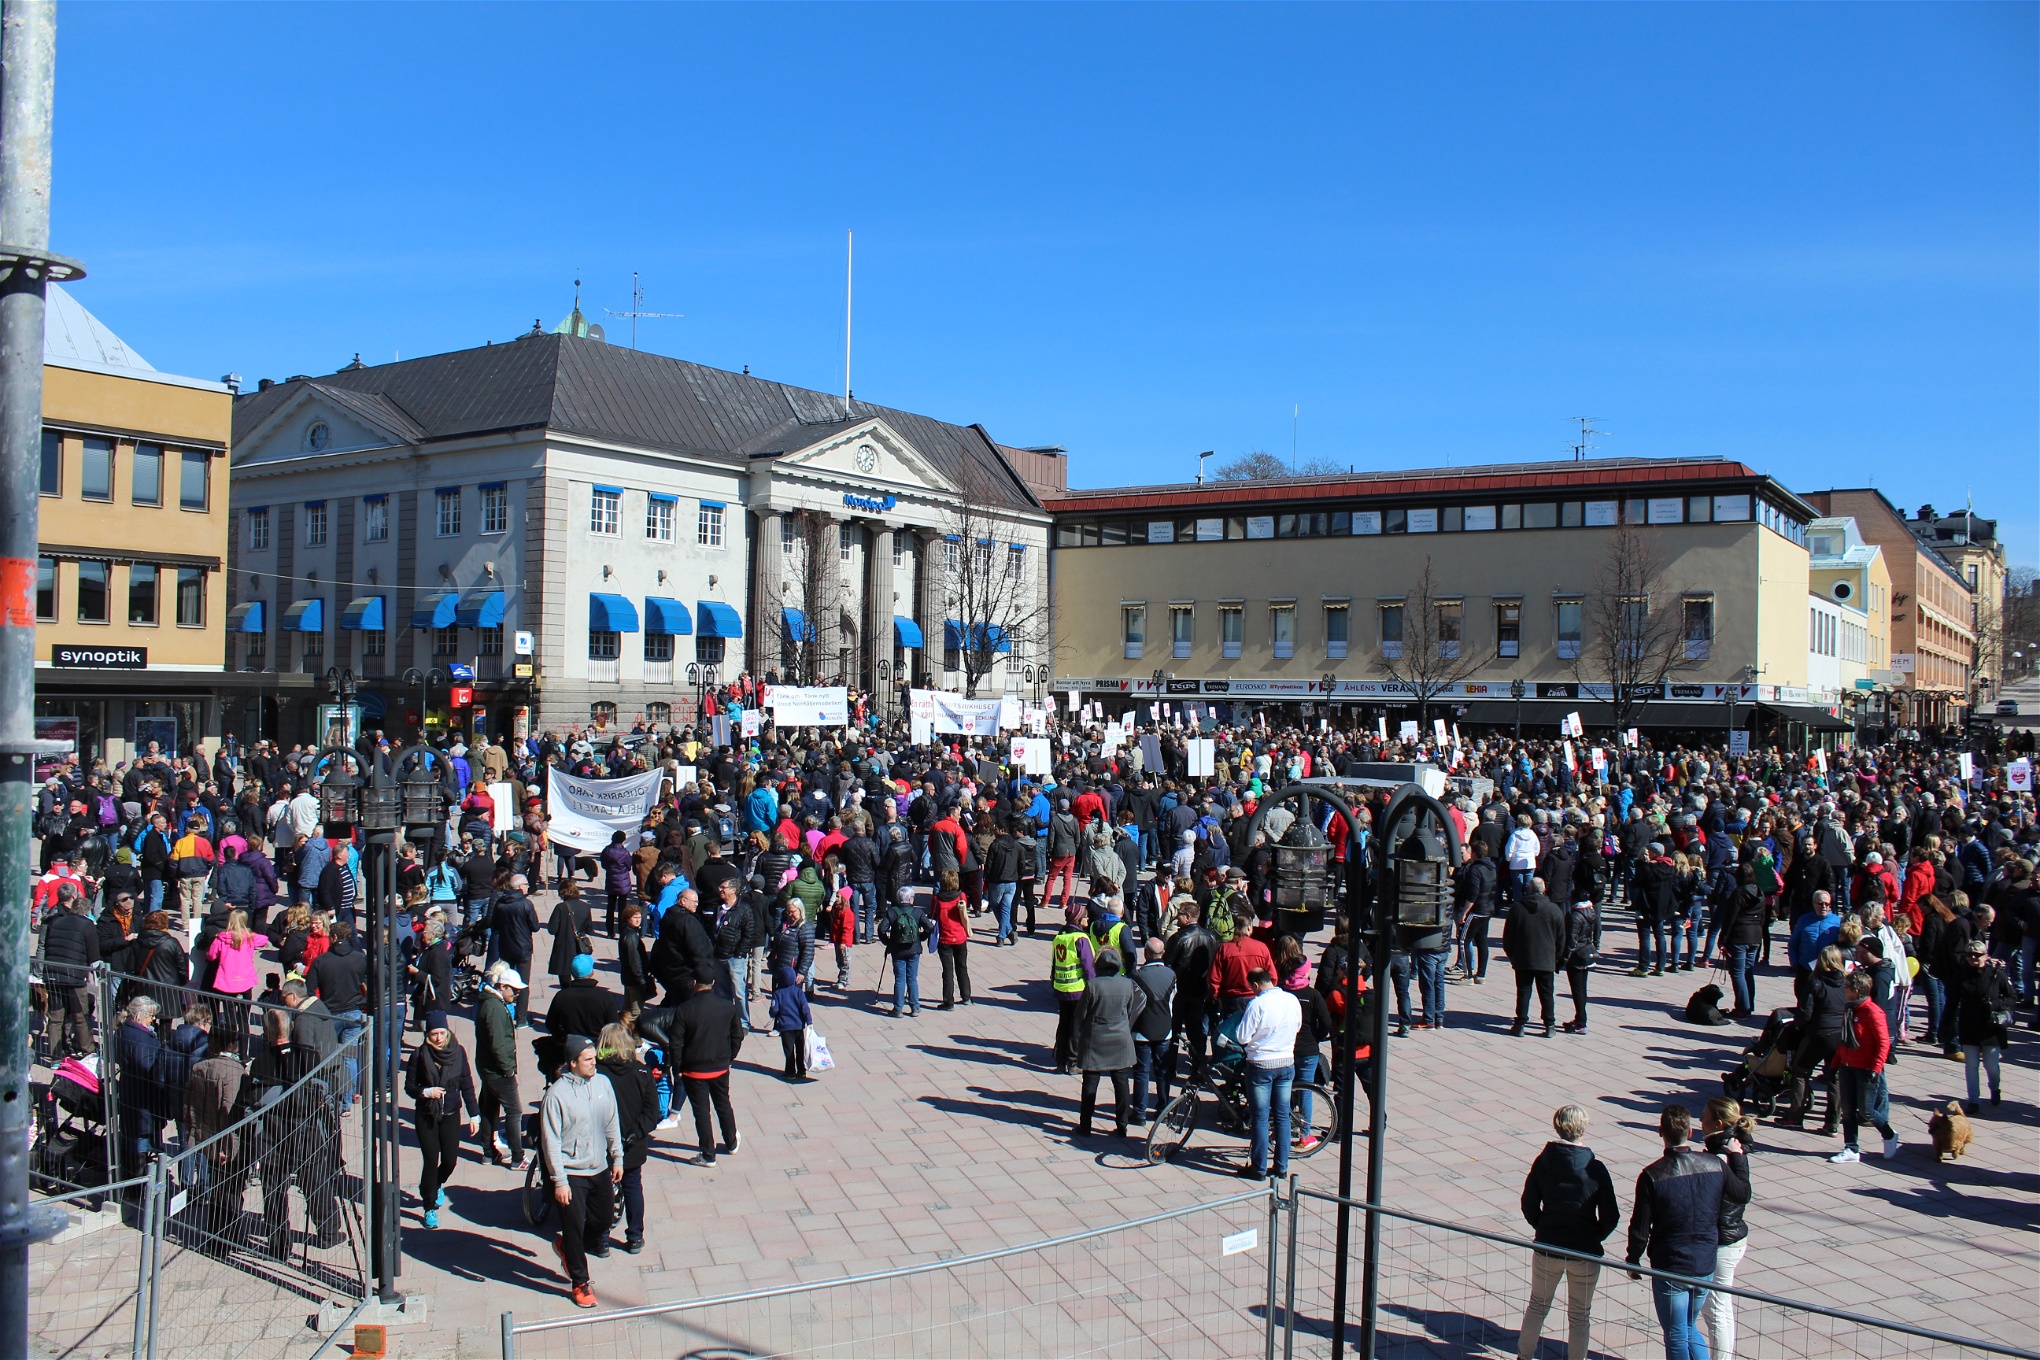 Foto: Desirée Enlund  Demonstrationen "Ådalen reser sig" den 24 april 2016 i Härnösand samlade tiotusentals människor.